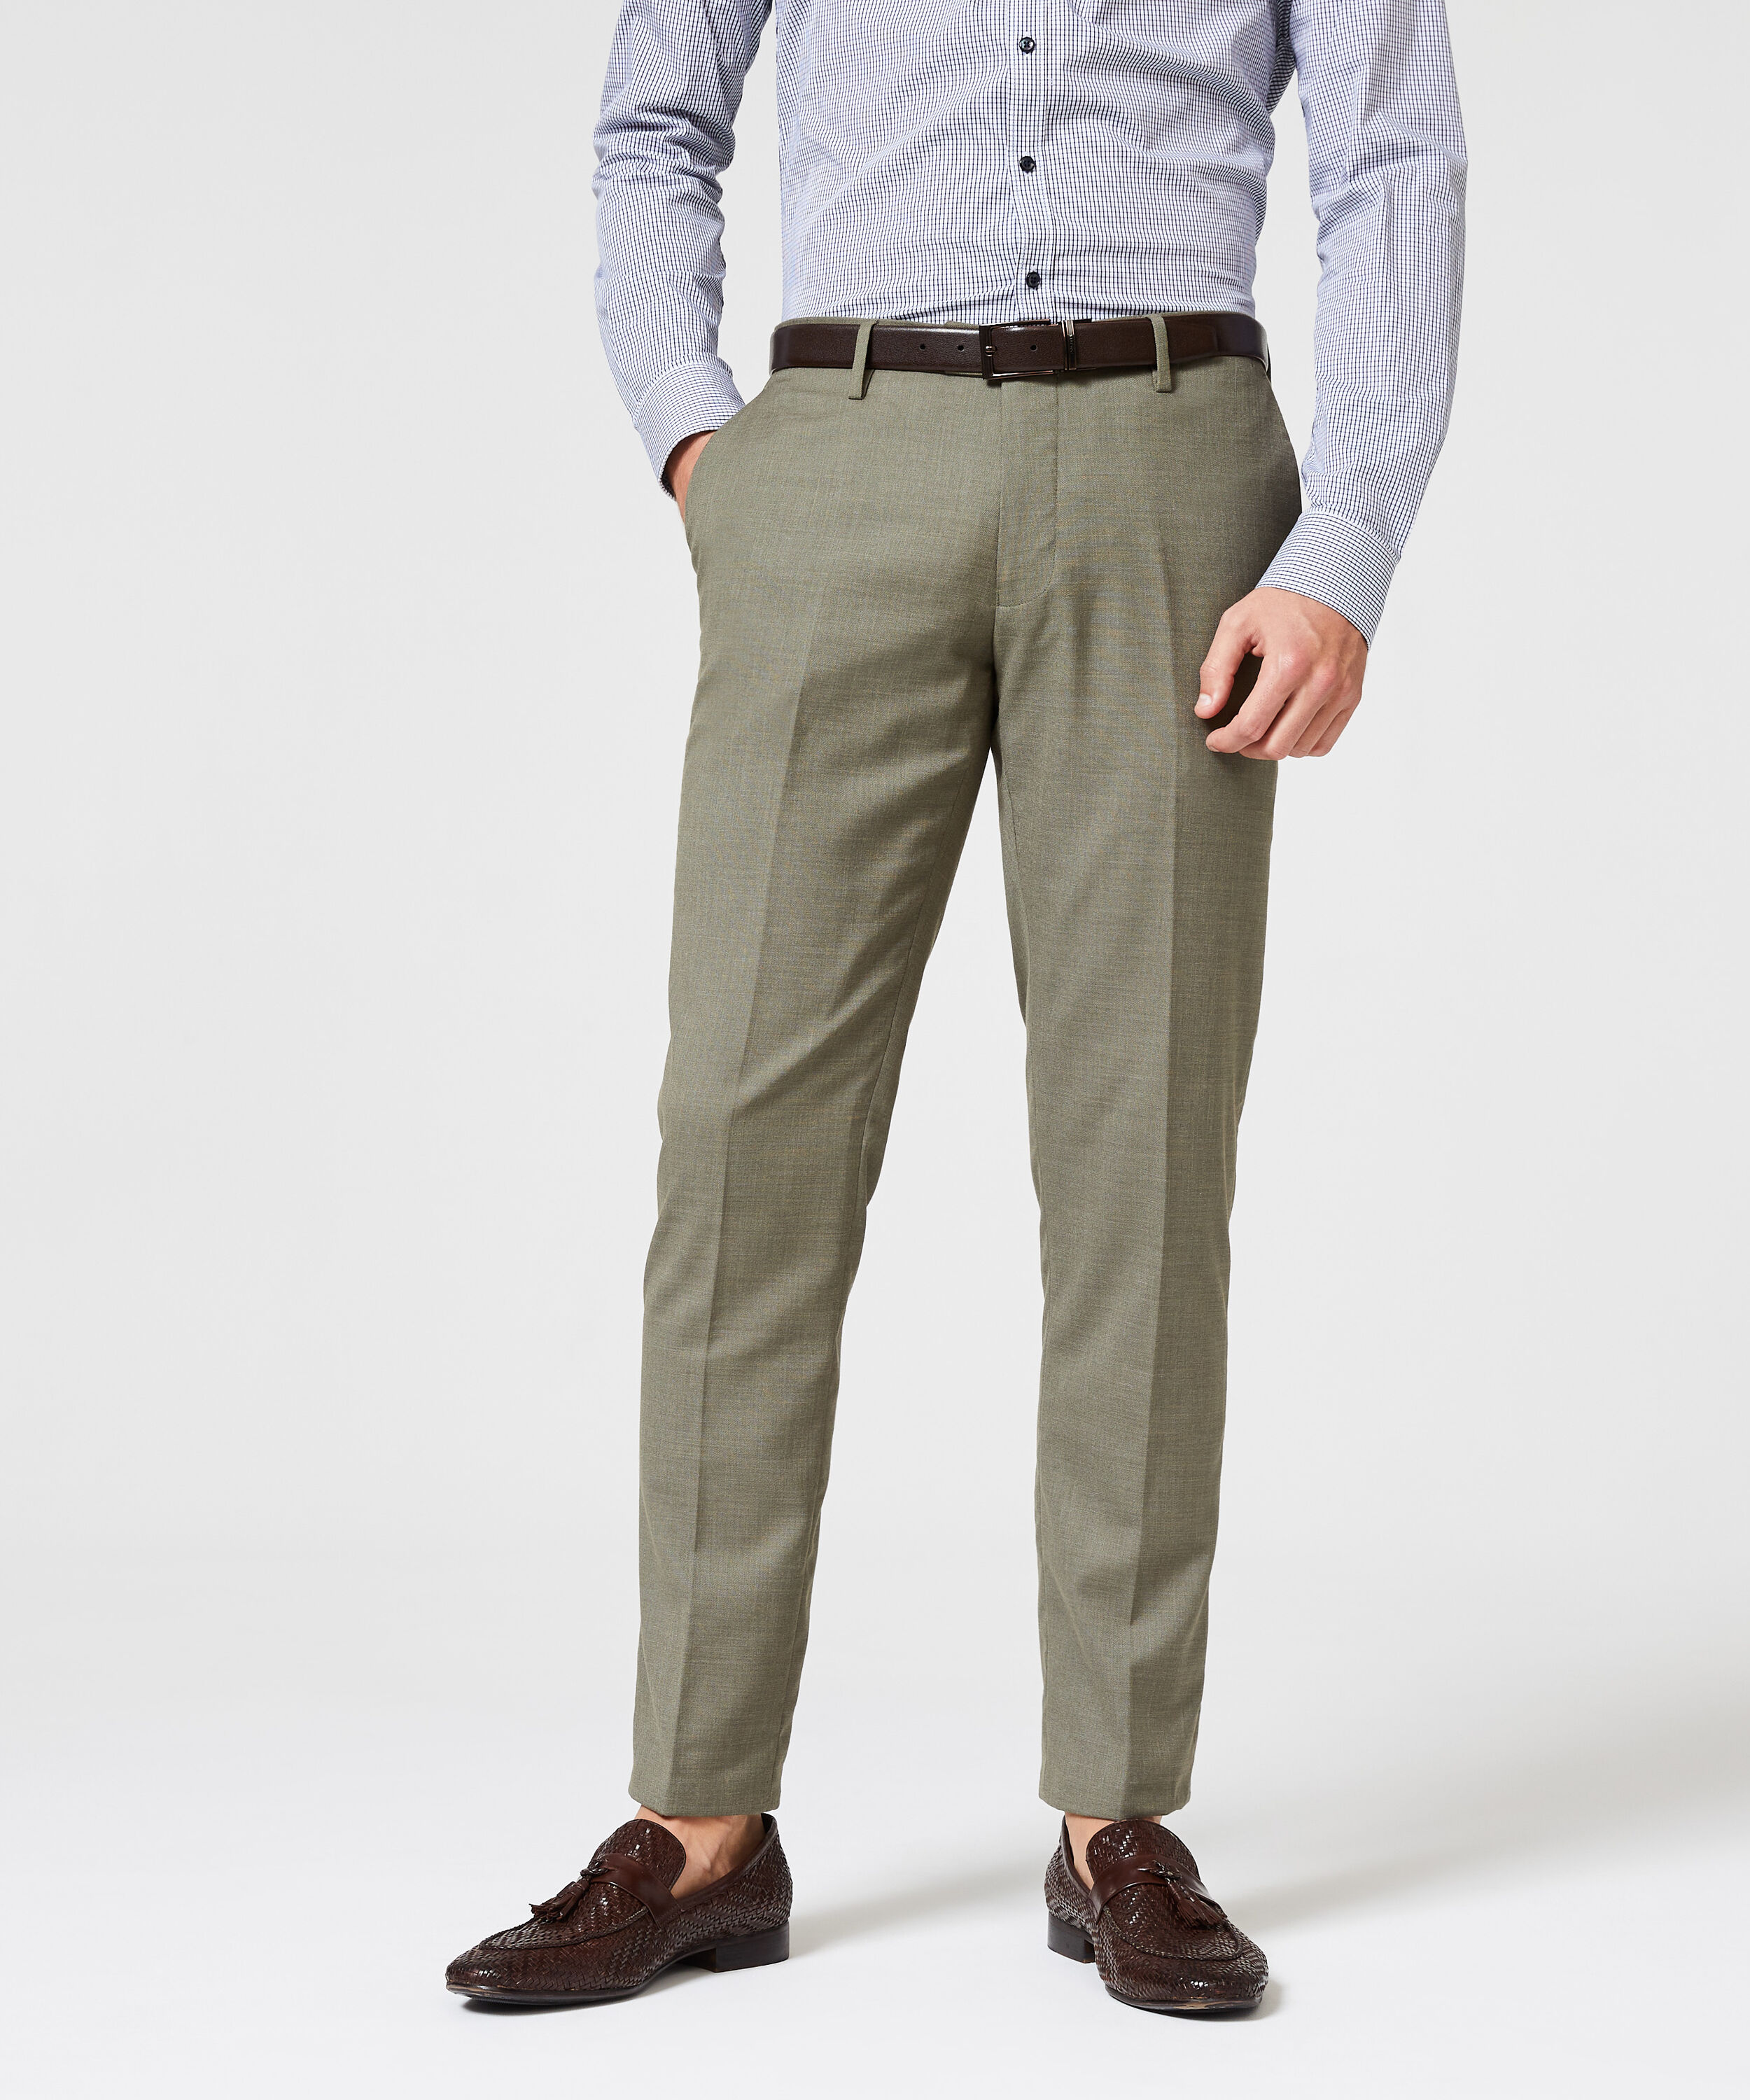 Montorsop Tailored Pants - Olive - Slim Stretch Tailored Pants, Suit Pants